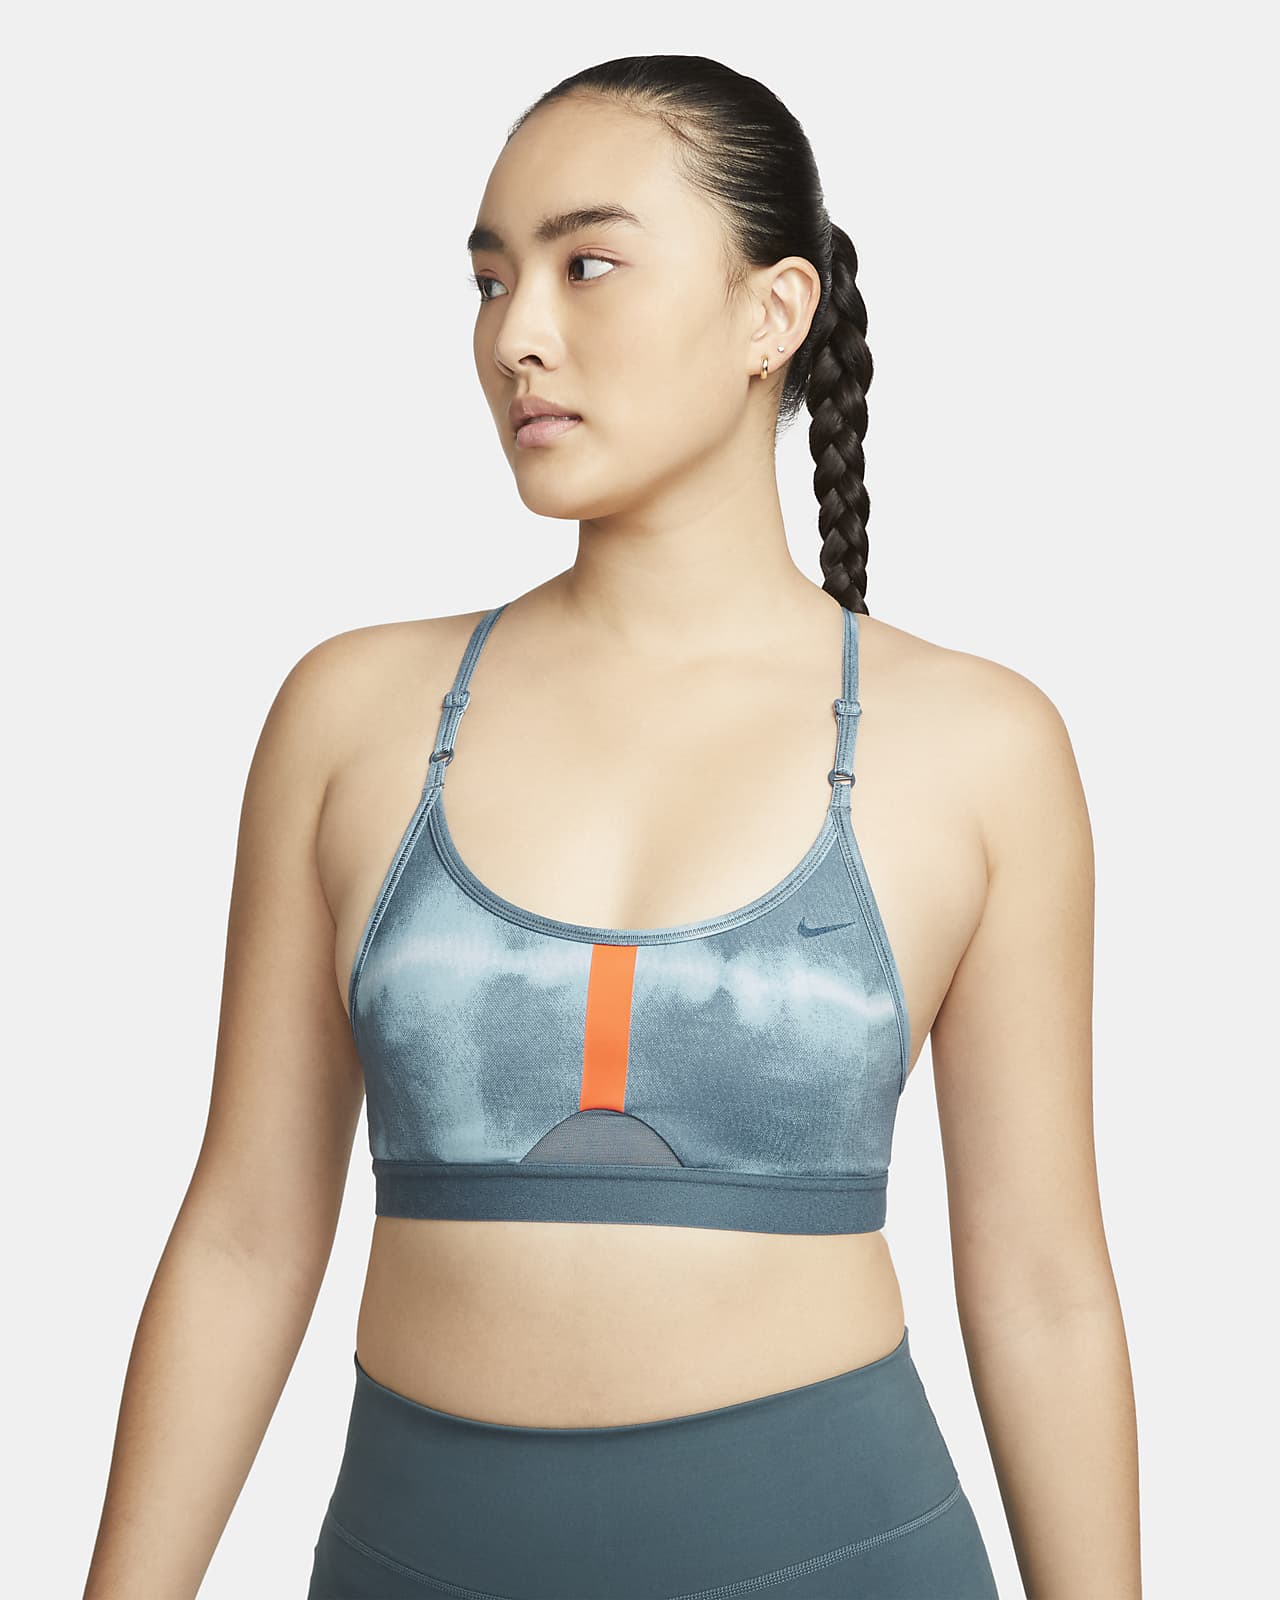 Nike Indy 女款輕度支撐型襯墊滿版印花運動內衣